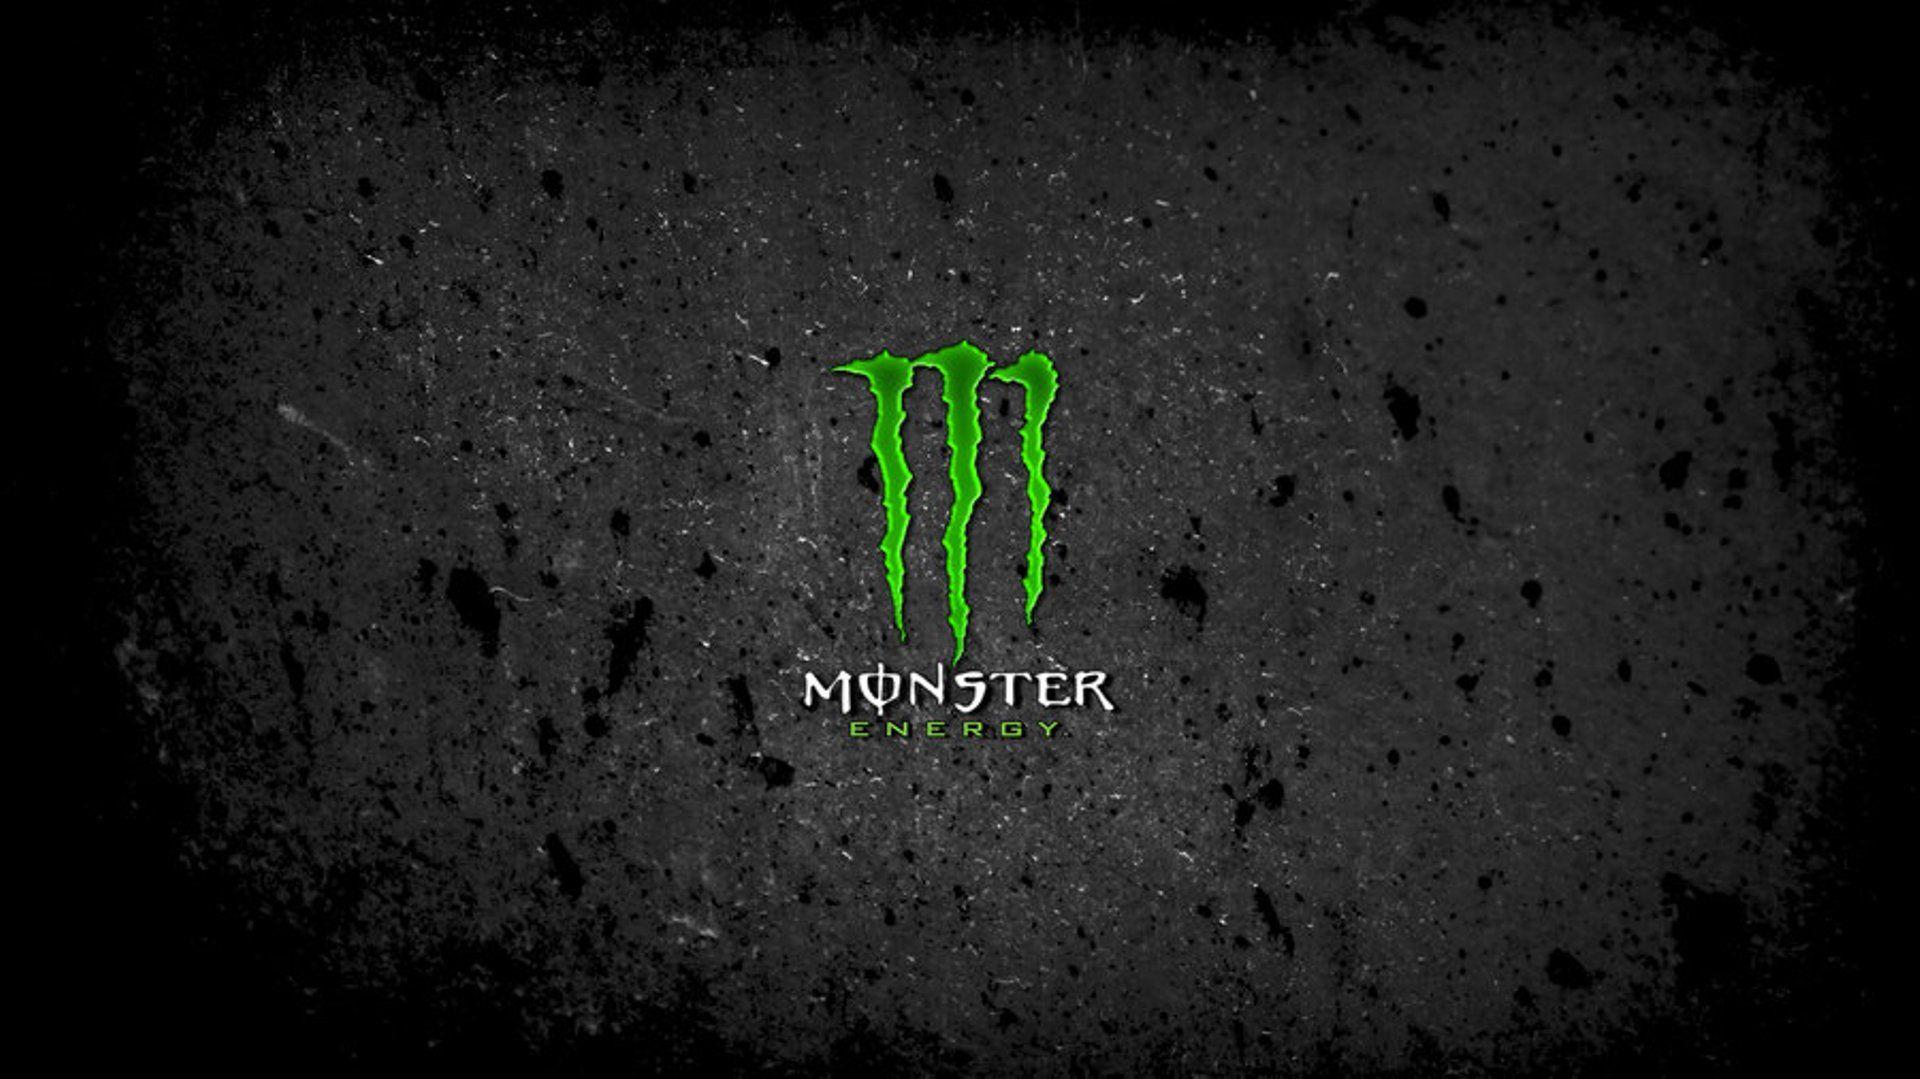 Pink Monster Logo - Free Monster Logo, Download Free